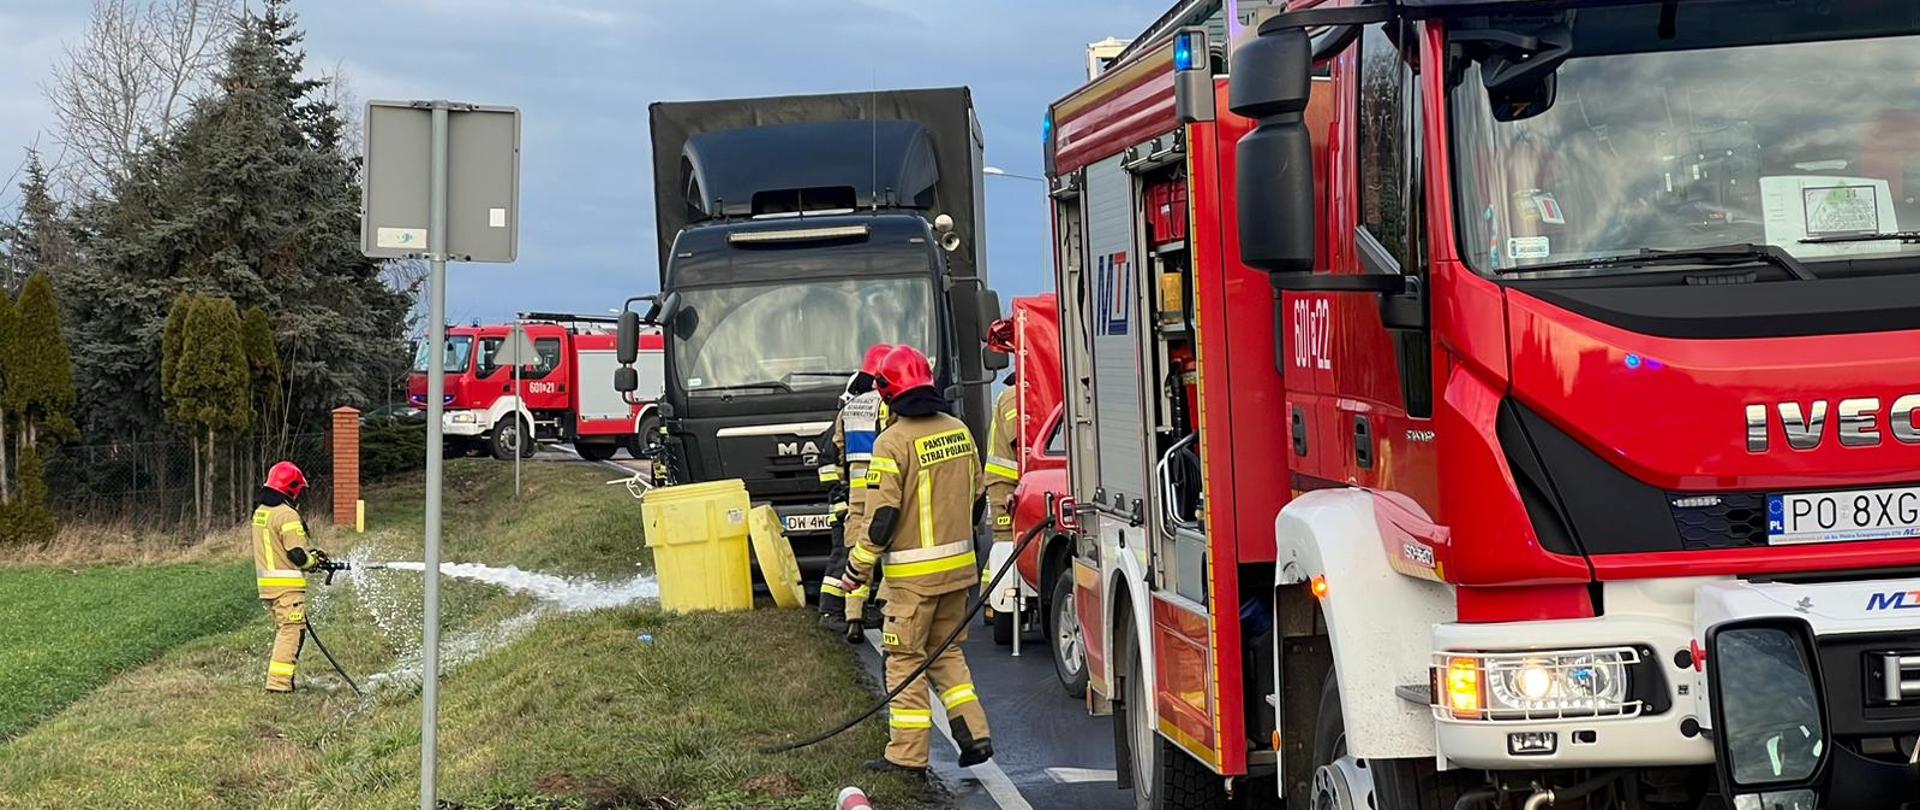 Na zdjęciu czerwone samochody strażackie oraz samochód ciężarowy koloru czarnego biorący udział w zdarzeniu, strażak podający prąd piany pod uszkodzony samochód ciężarowy.